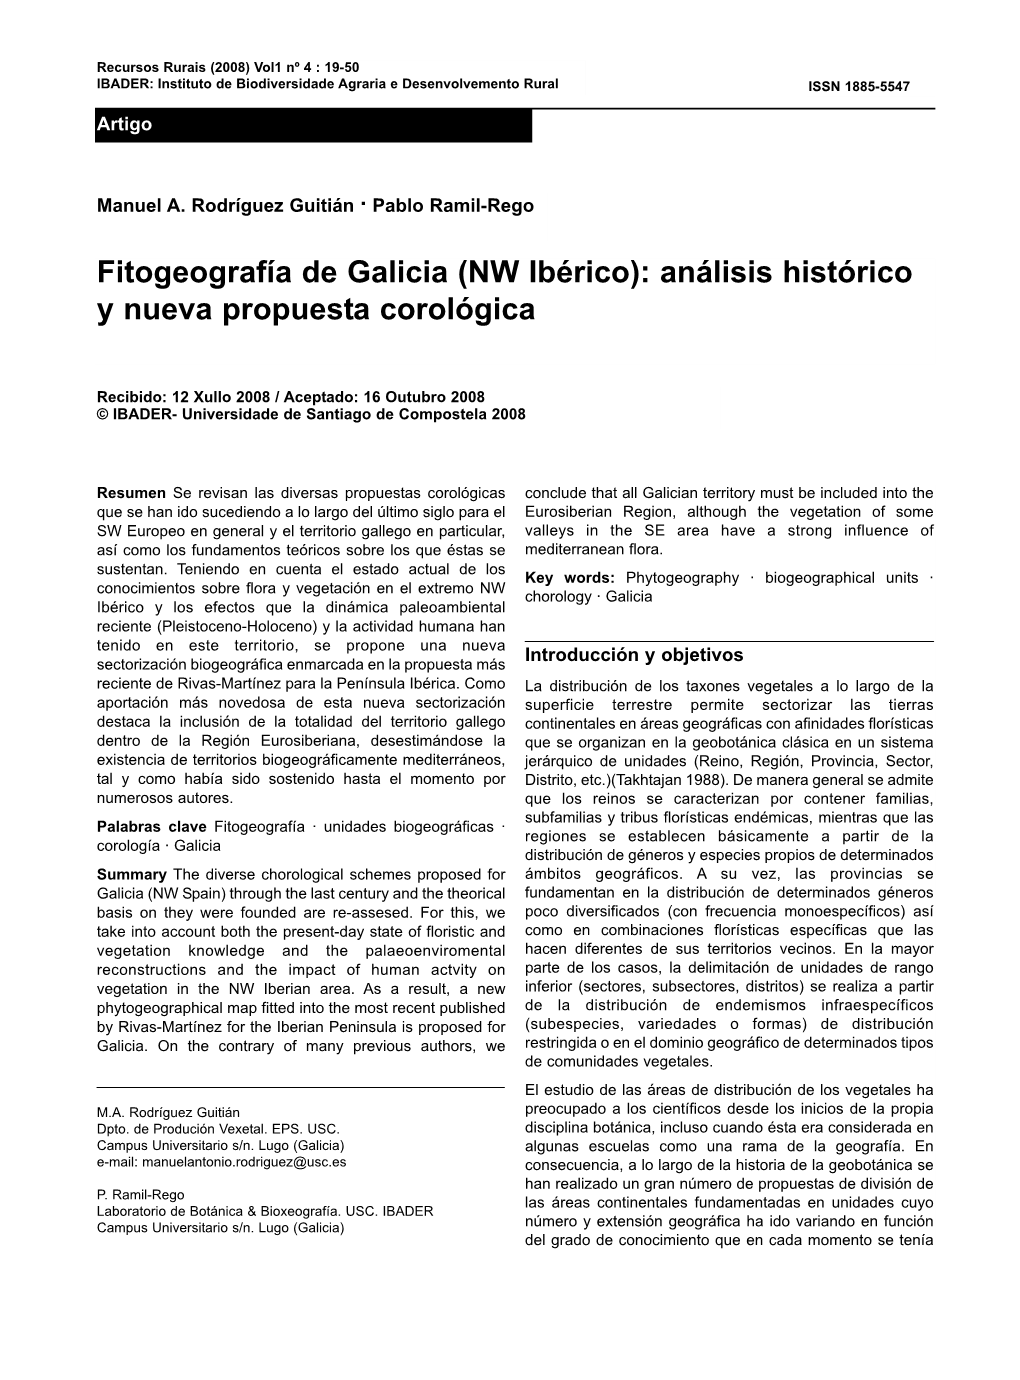 Fitogeografía De Galicia (NW Ibérico): Análisis Histórico Y Nueva Propuesta Corológica